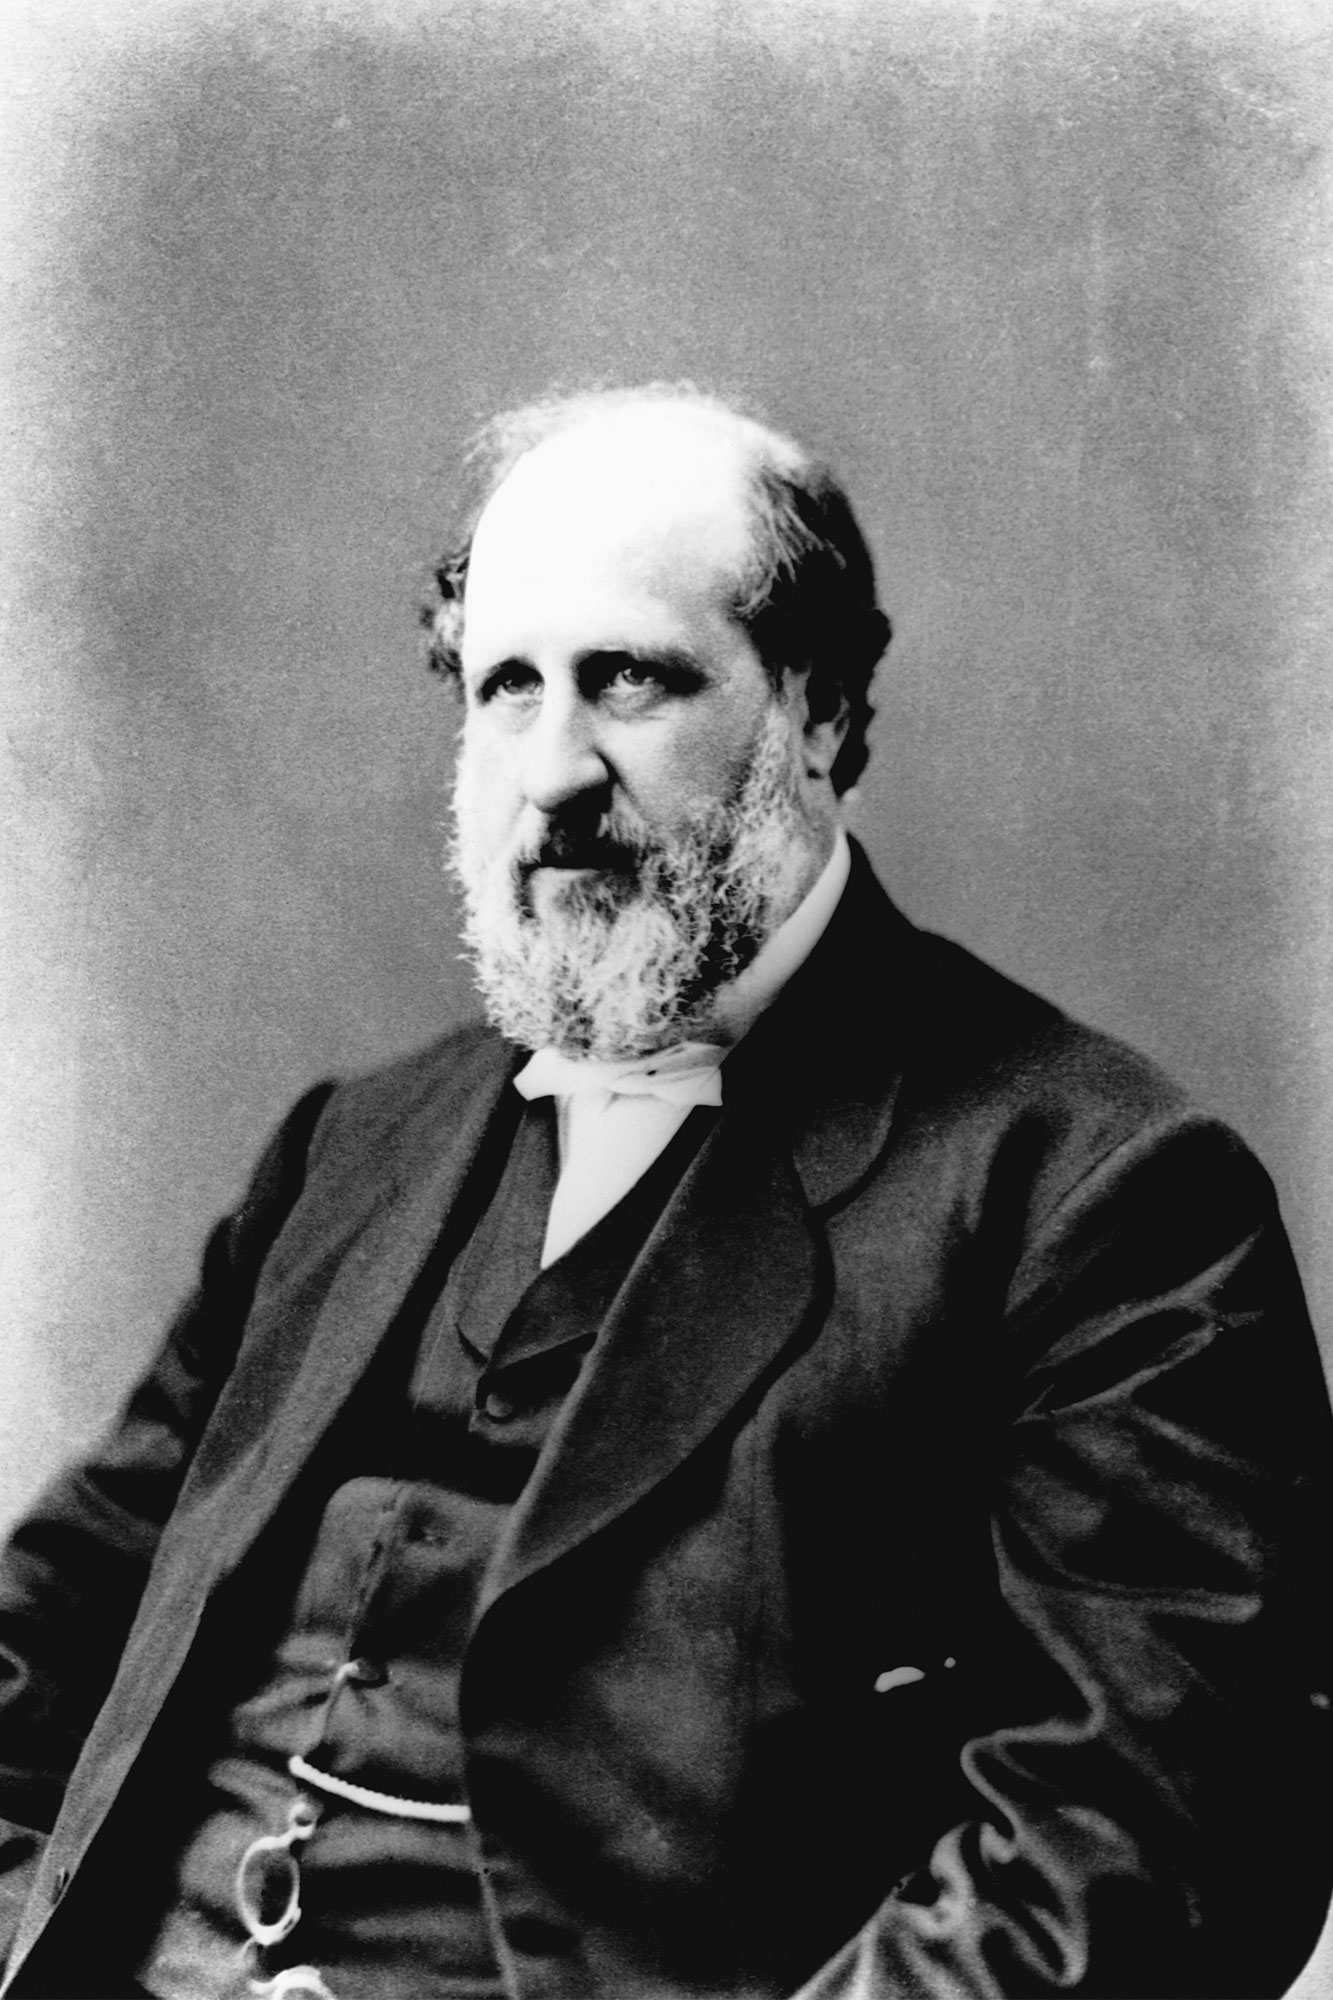 William Marcy Tweed (1823-1878), known as Boss Tweed